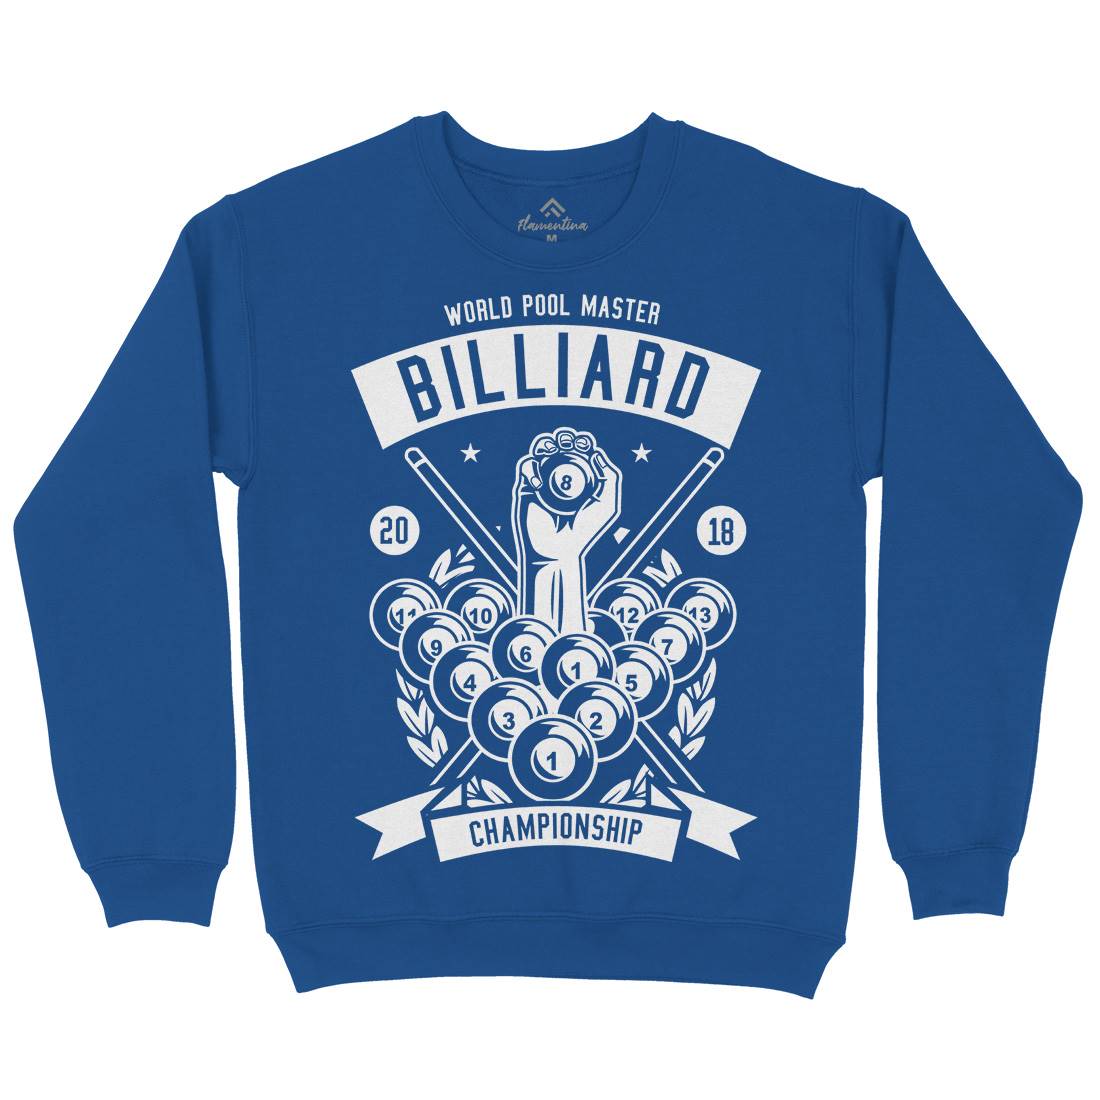 Billiard Championship Kids Crew Neck Sweatshirt Sport B499